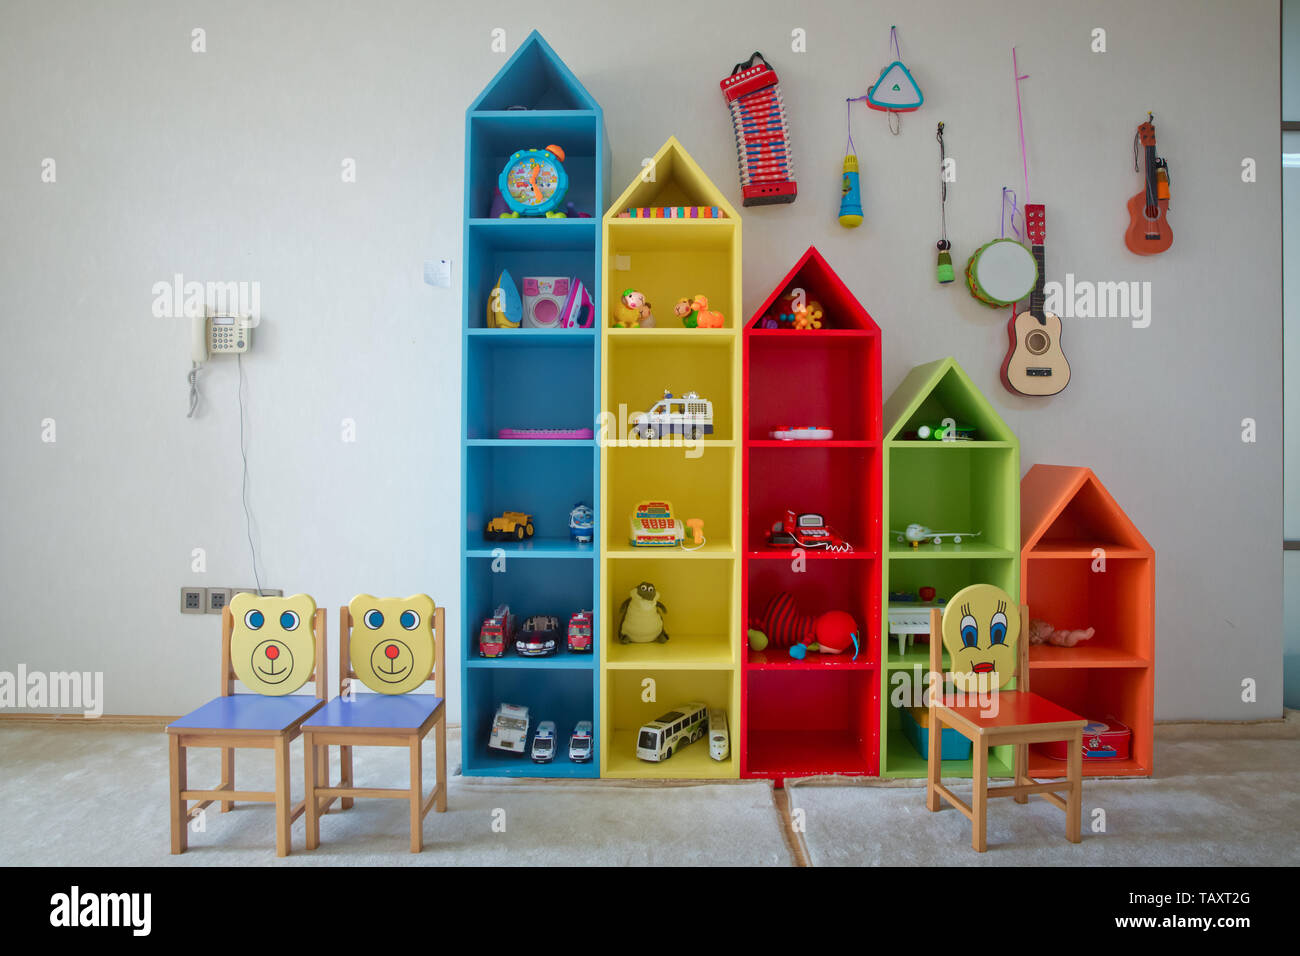 shelves for children's room